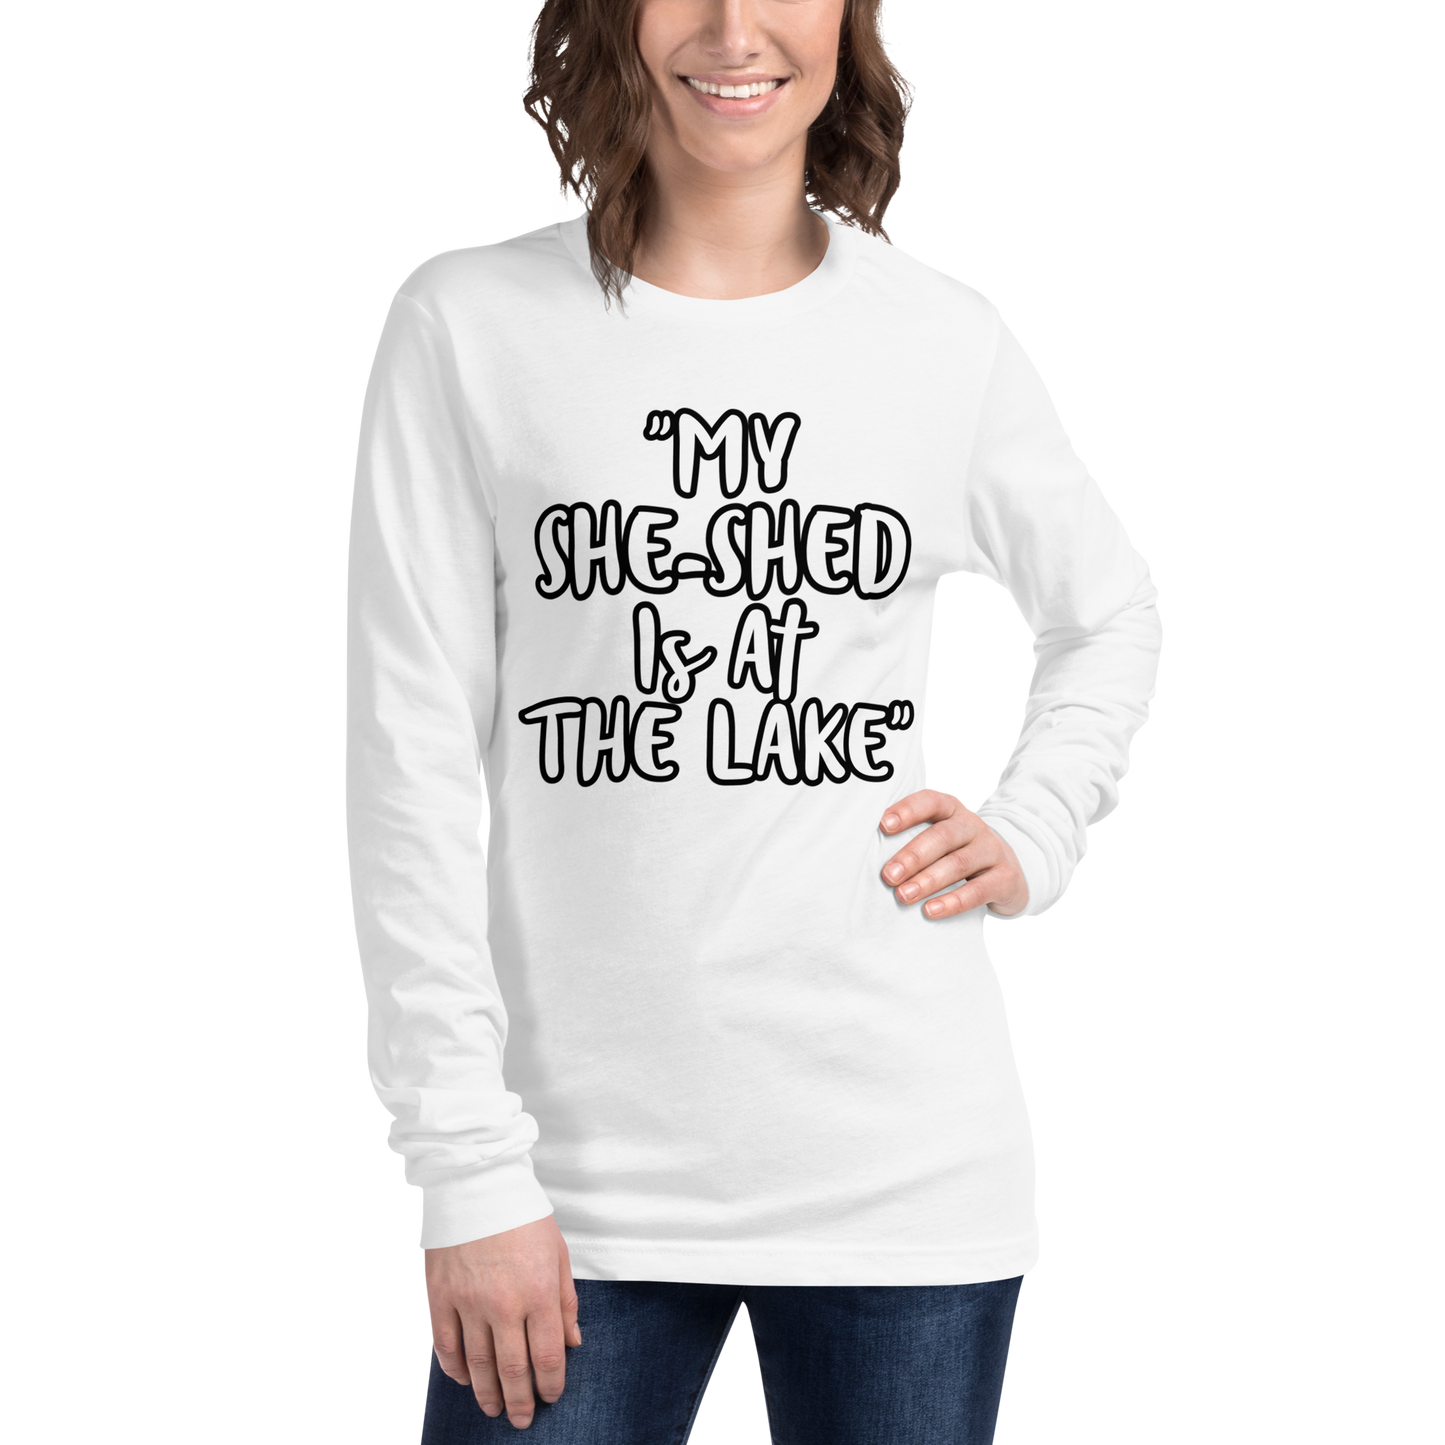 She-Shed Lake Long Sleeve Shirt